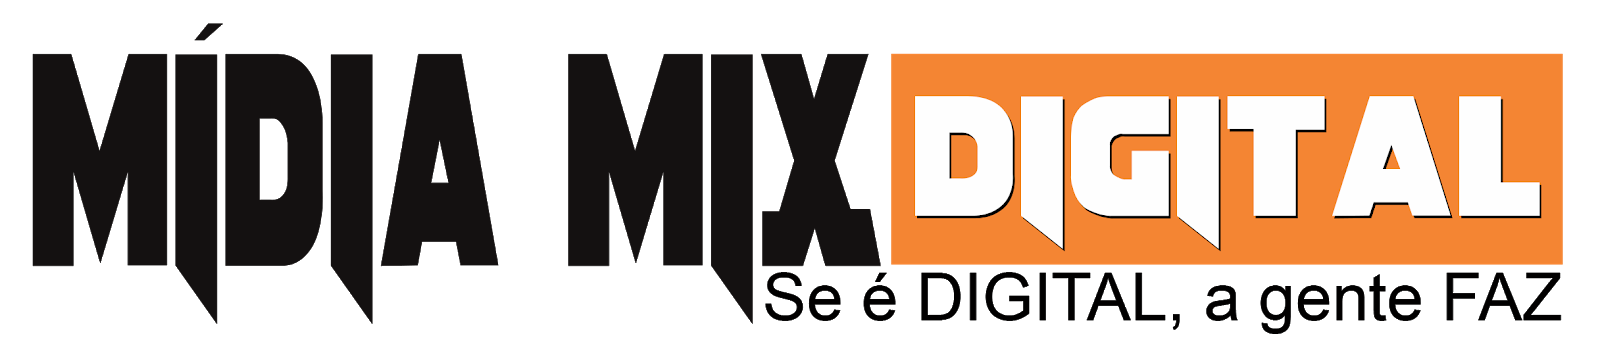 MIDIA MIX DIGITAL OFICIAL